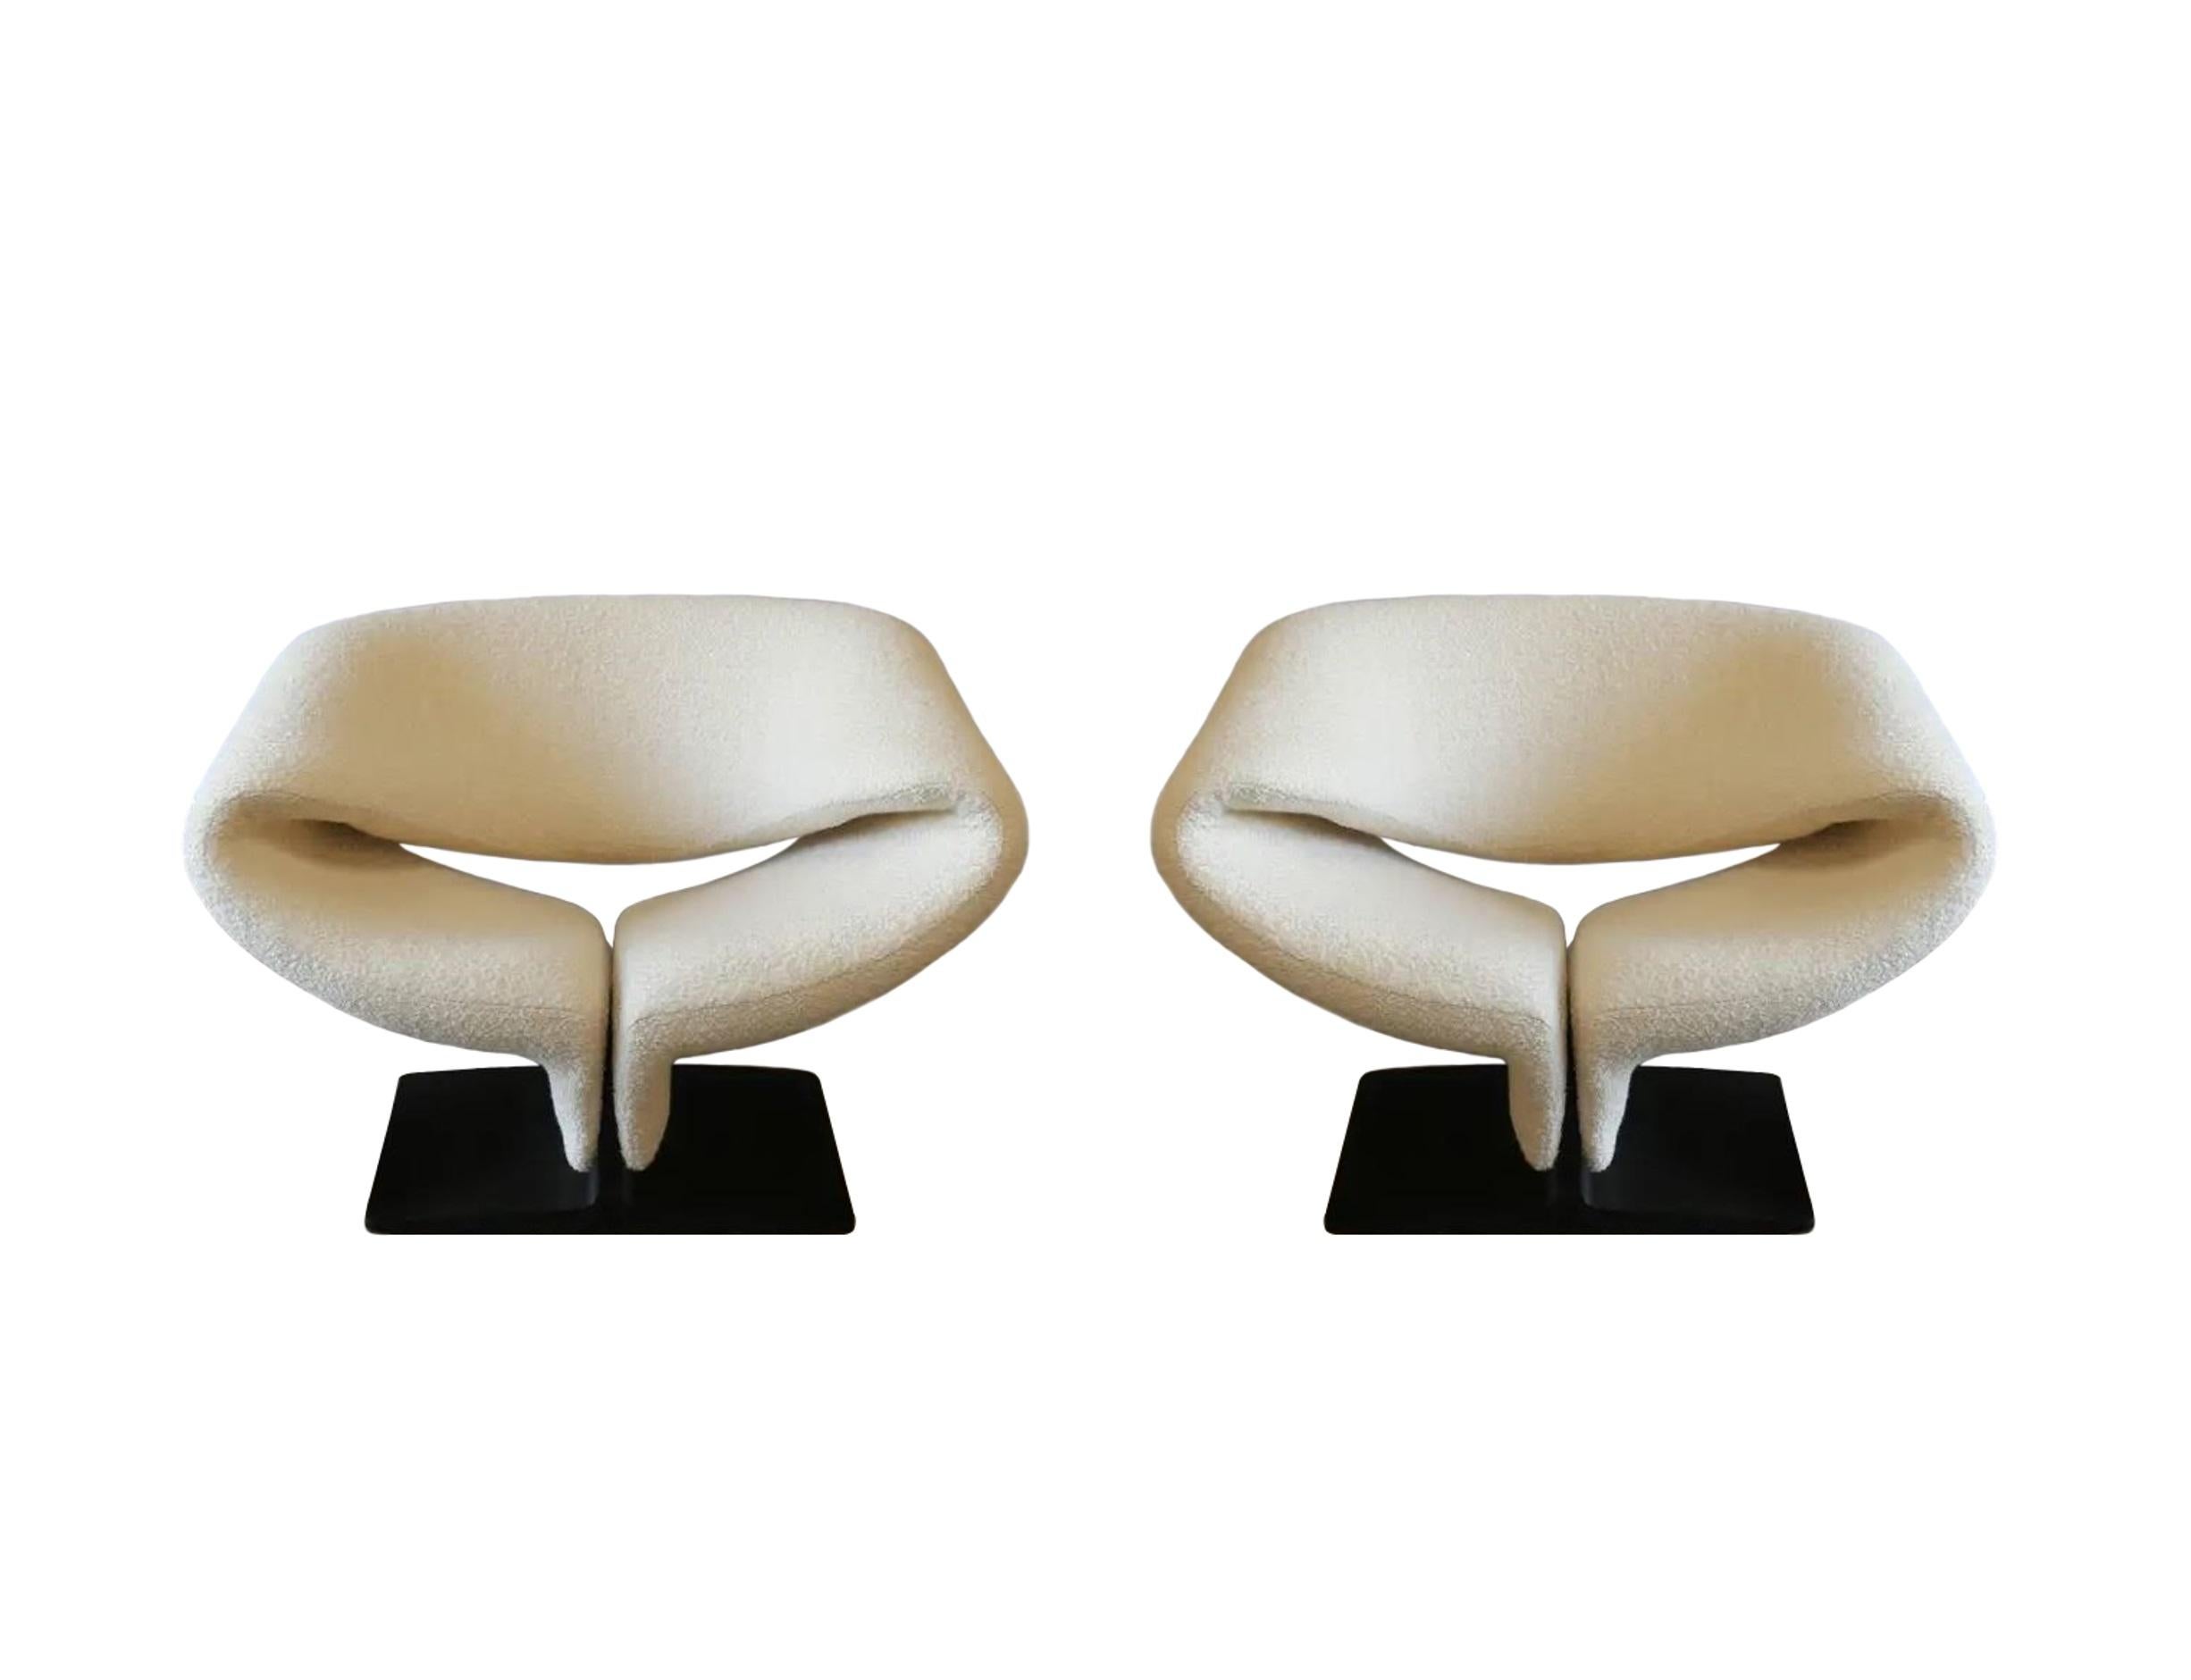 Paire originale de chaises à ruban modèle 582, conçues par Pierre Paulin pour Artifort. Une forme frappante, de l'ère spatiale, avec des plans courbes. Des lignes plongeantes et une forme profilée incroyables. Peut-être la solution d'assise la plus